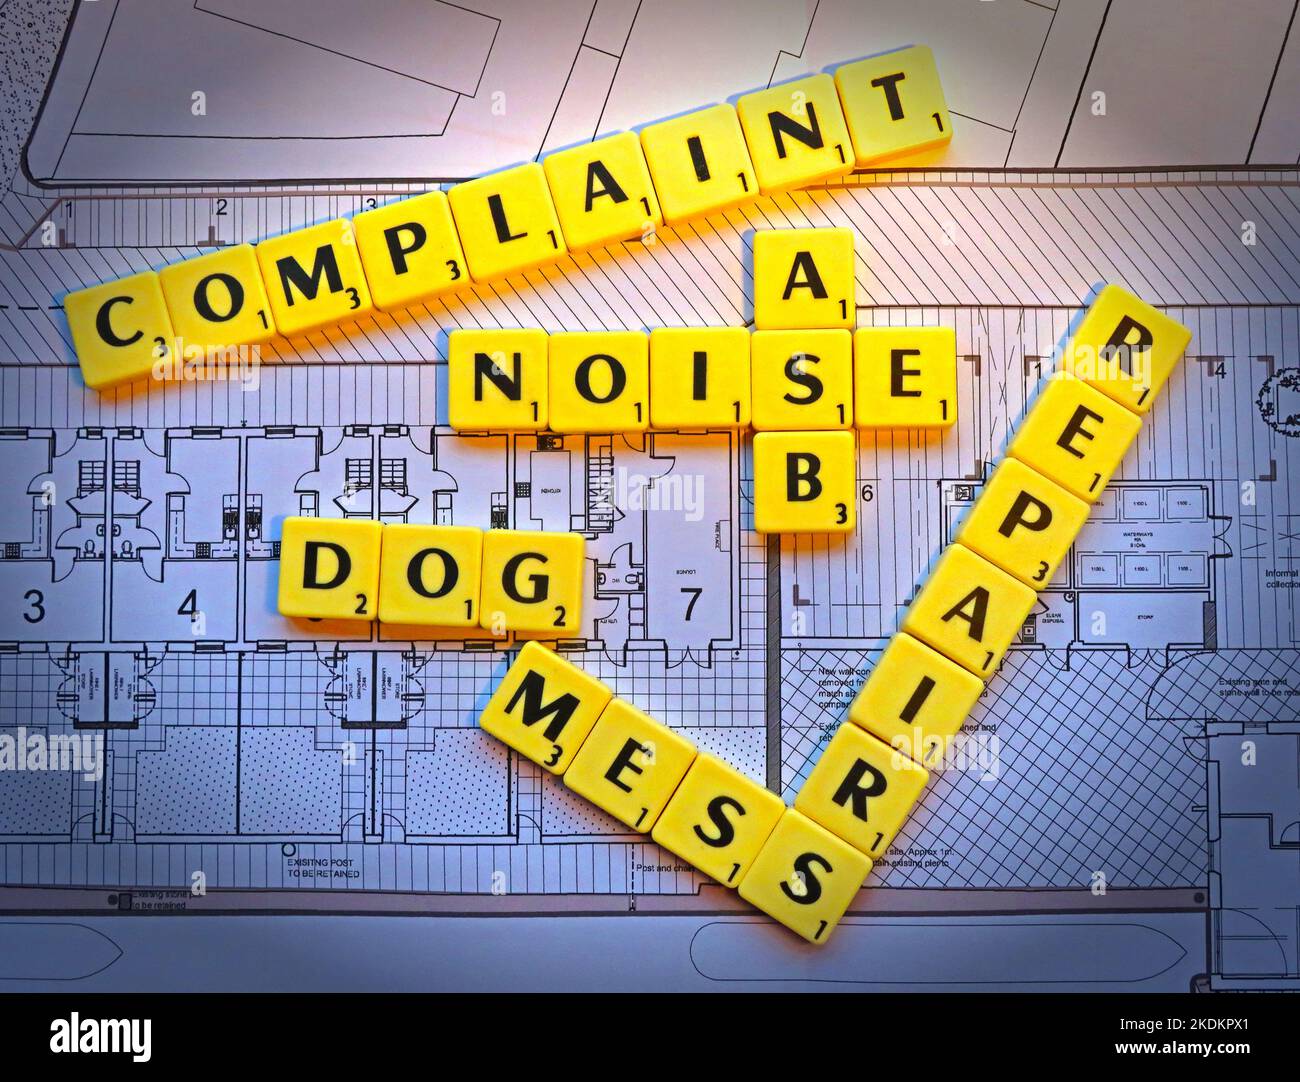 Hundemassch, Lärm, ASB, Reparaturen Beschwerden von Wohnungen - Scrabble Briefe über Pläne für ein Wohnungssystem - Immobilien Fragen Stockfoto